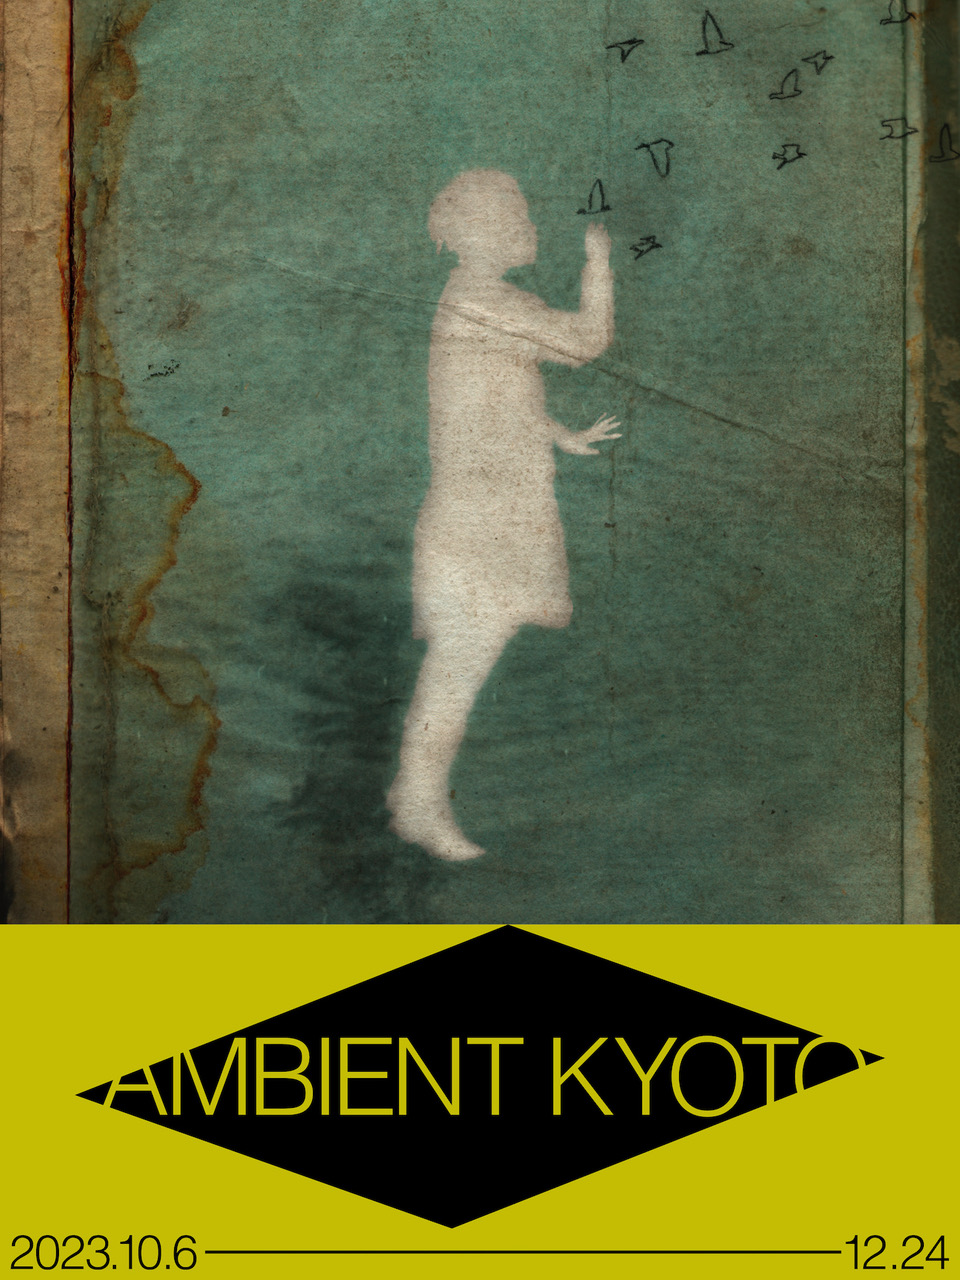 10月開催の「AMBIENT KYOTO 2023」、坂本龍一、コーネリアスほか出展アーティストを発表。テリー・ライリーのライヴもあり